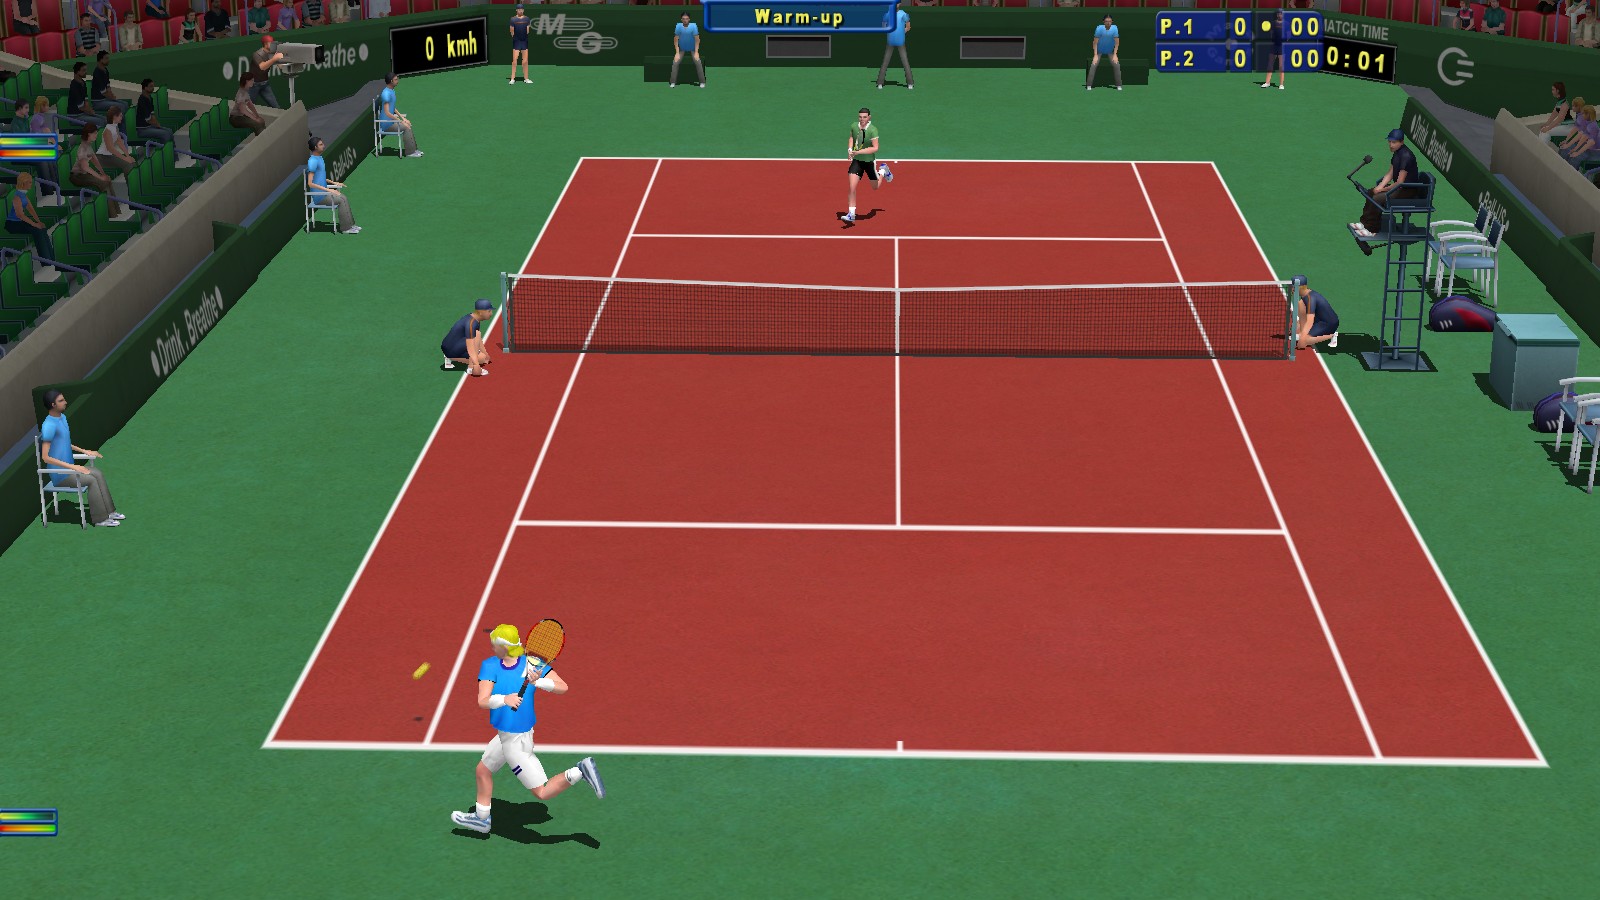 Первая игра теннис. Tennis Elbow 2013. Игру в теннис с графическим интерфейсом. Внутренняя игра в теннис. Tennis (игра, 1984).